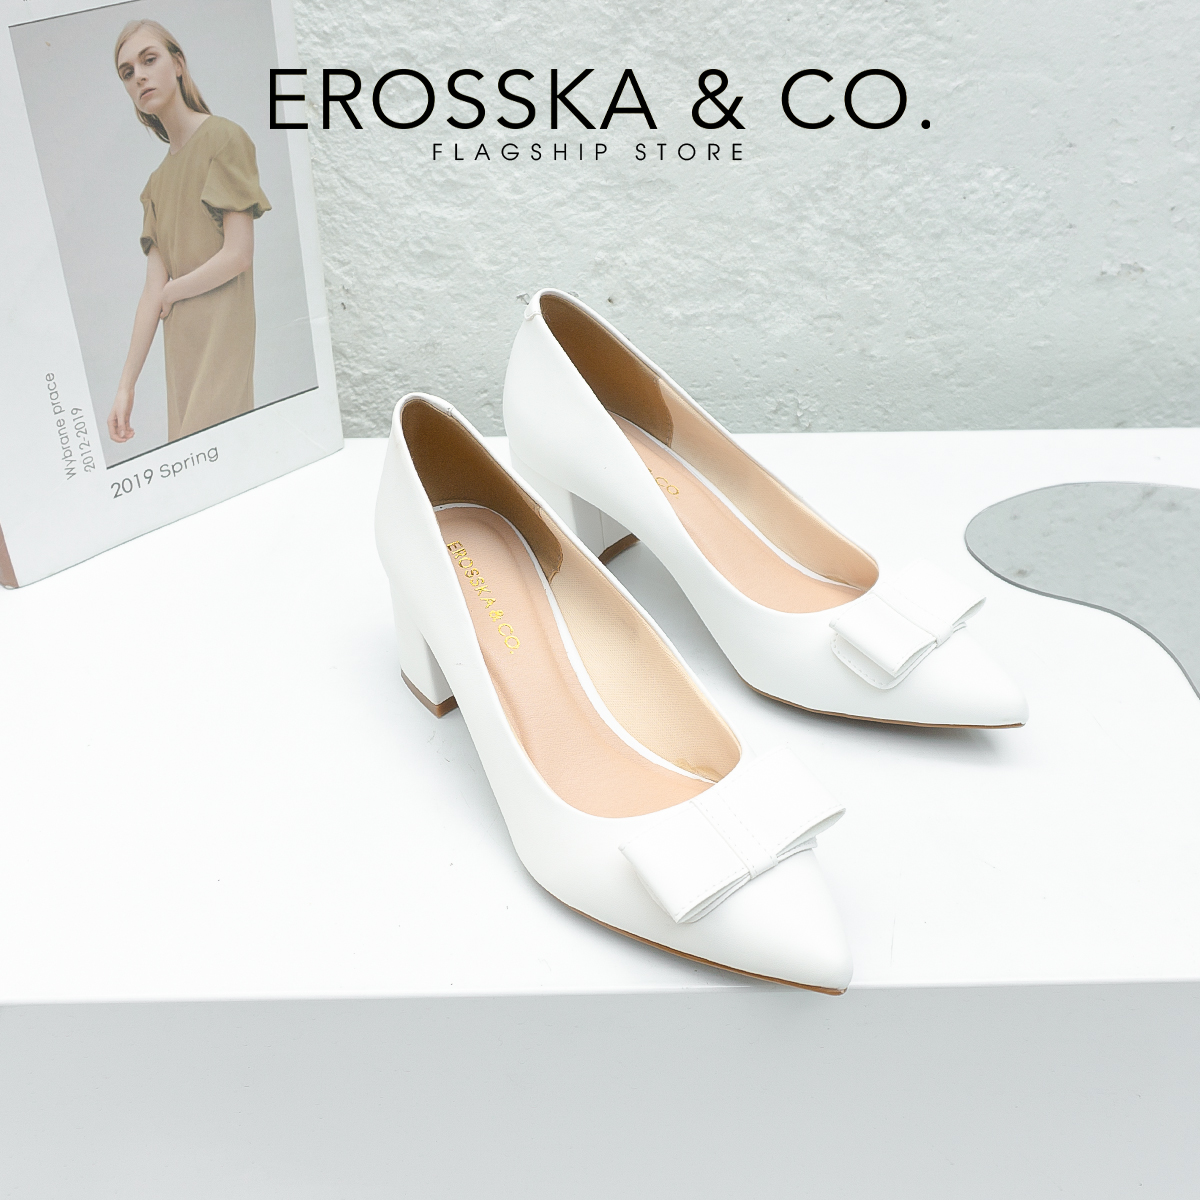 Erosska - Giày cao gót mũi nhọn phối nơ cao 5cm màu nude - EP015